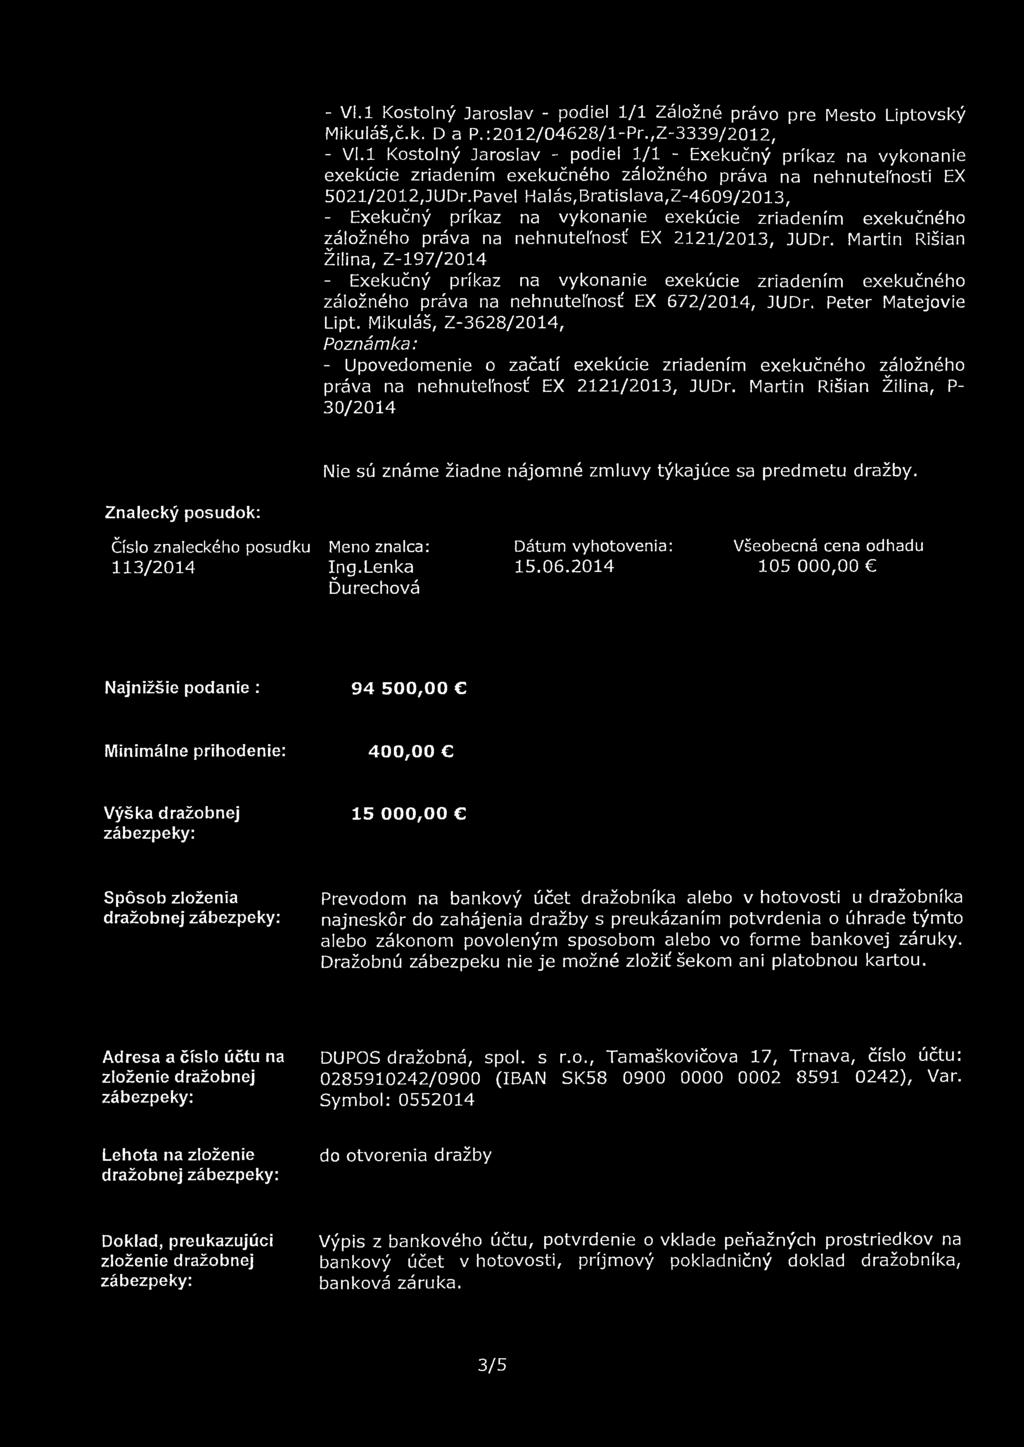 Pavel Halás,Bratislava,Z-4609/2013, záložného práva na nehnutefnosť EX 2121/2013, JUDr. Martin Rišian Žilina, Z-197/2014 záložného práva na nehnutefnosť EX 672/2014, JUDr. Peter Matejovie Lipt.